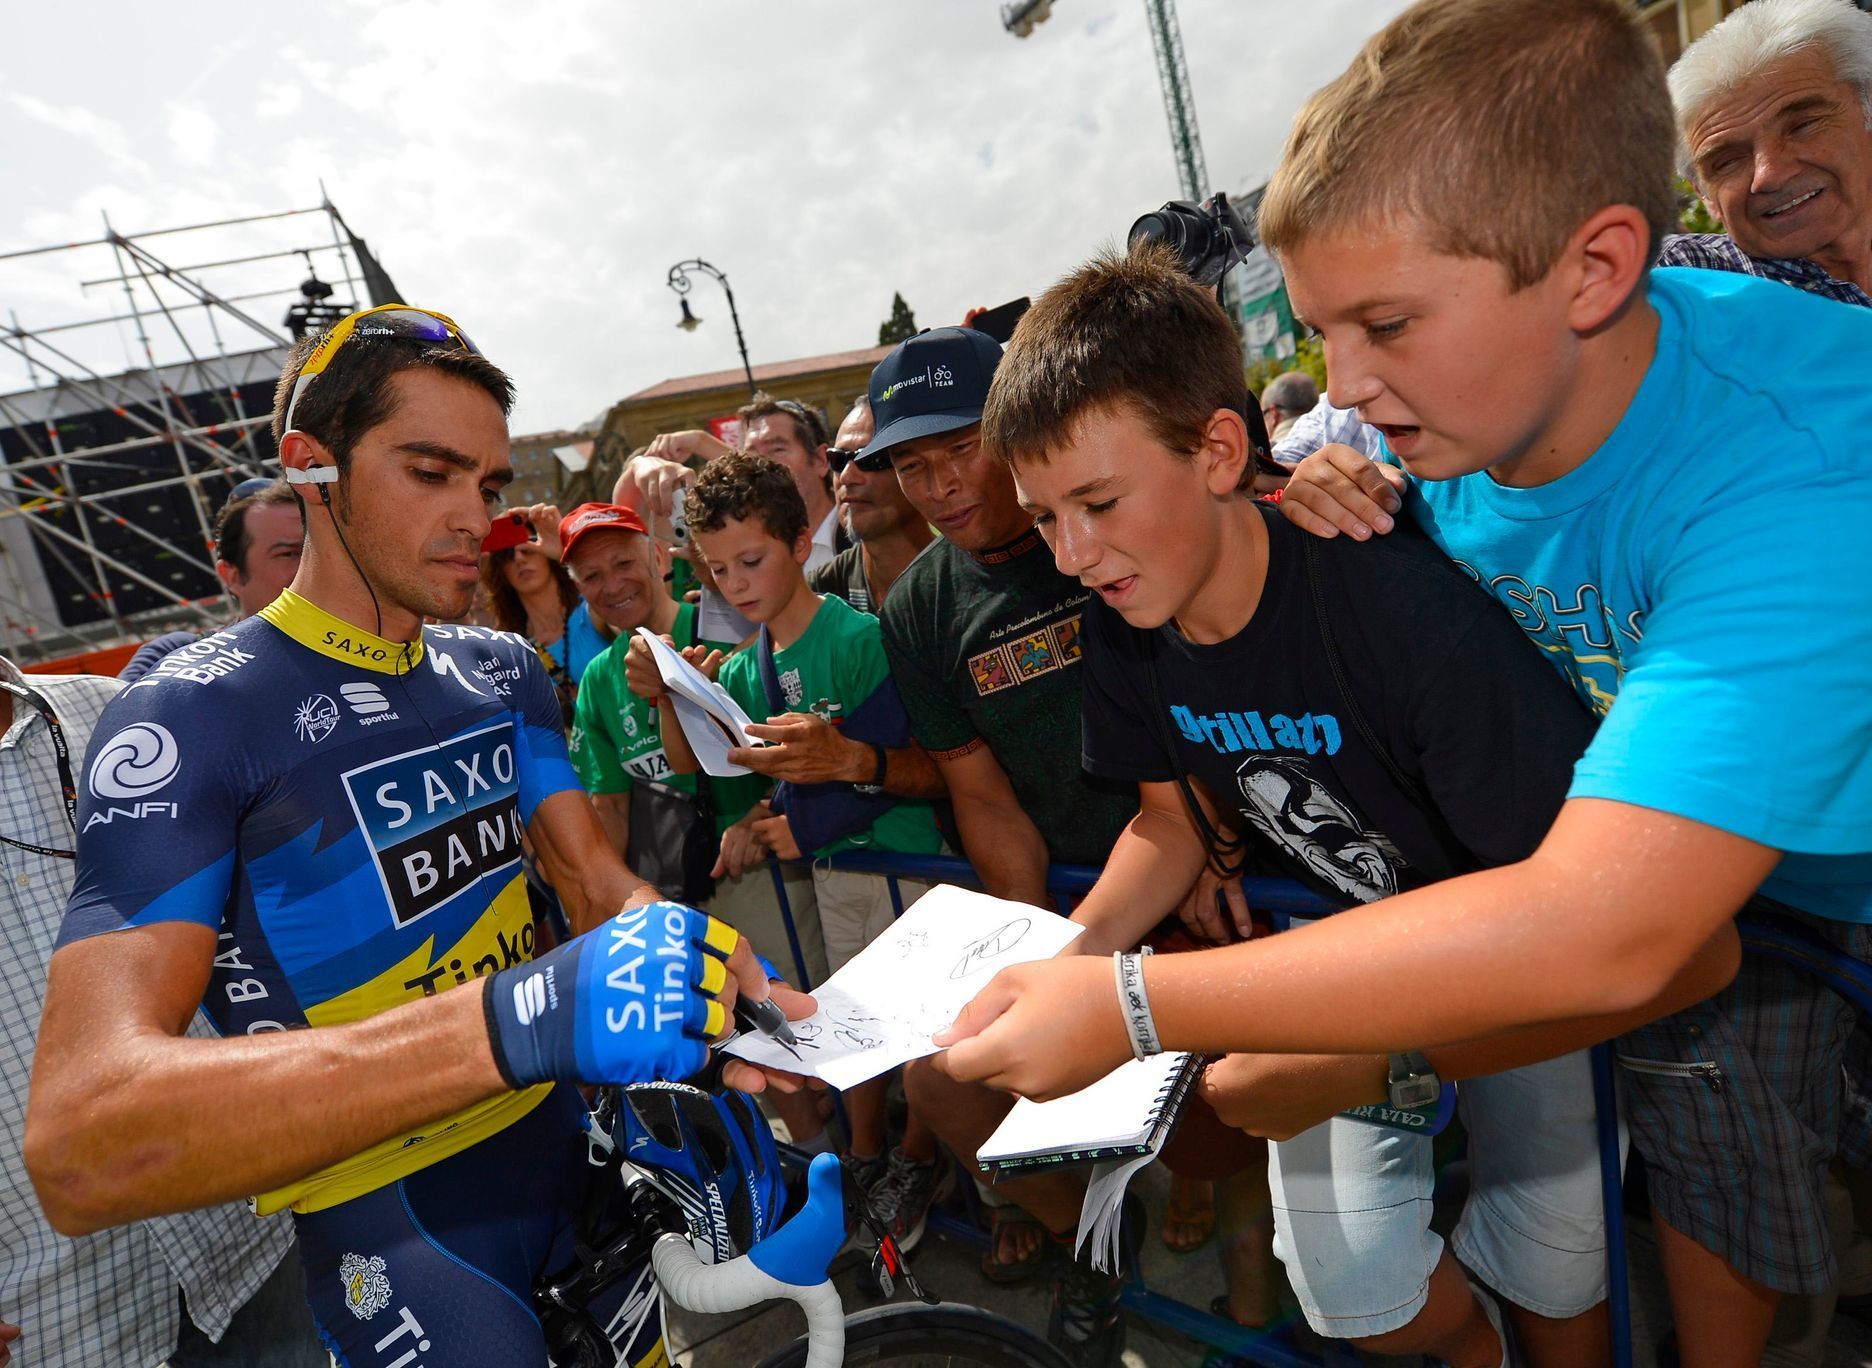 Alberto Contador na letošní Vueltě